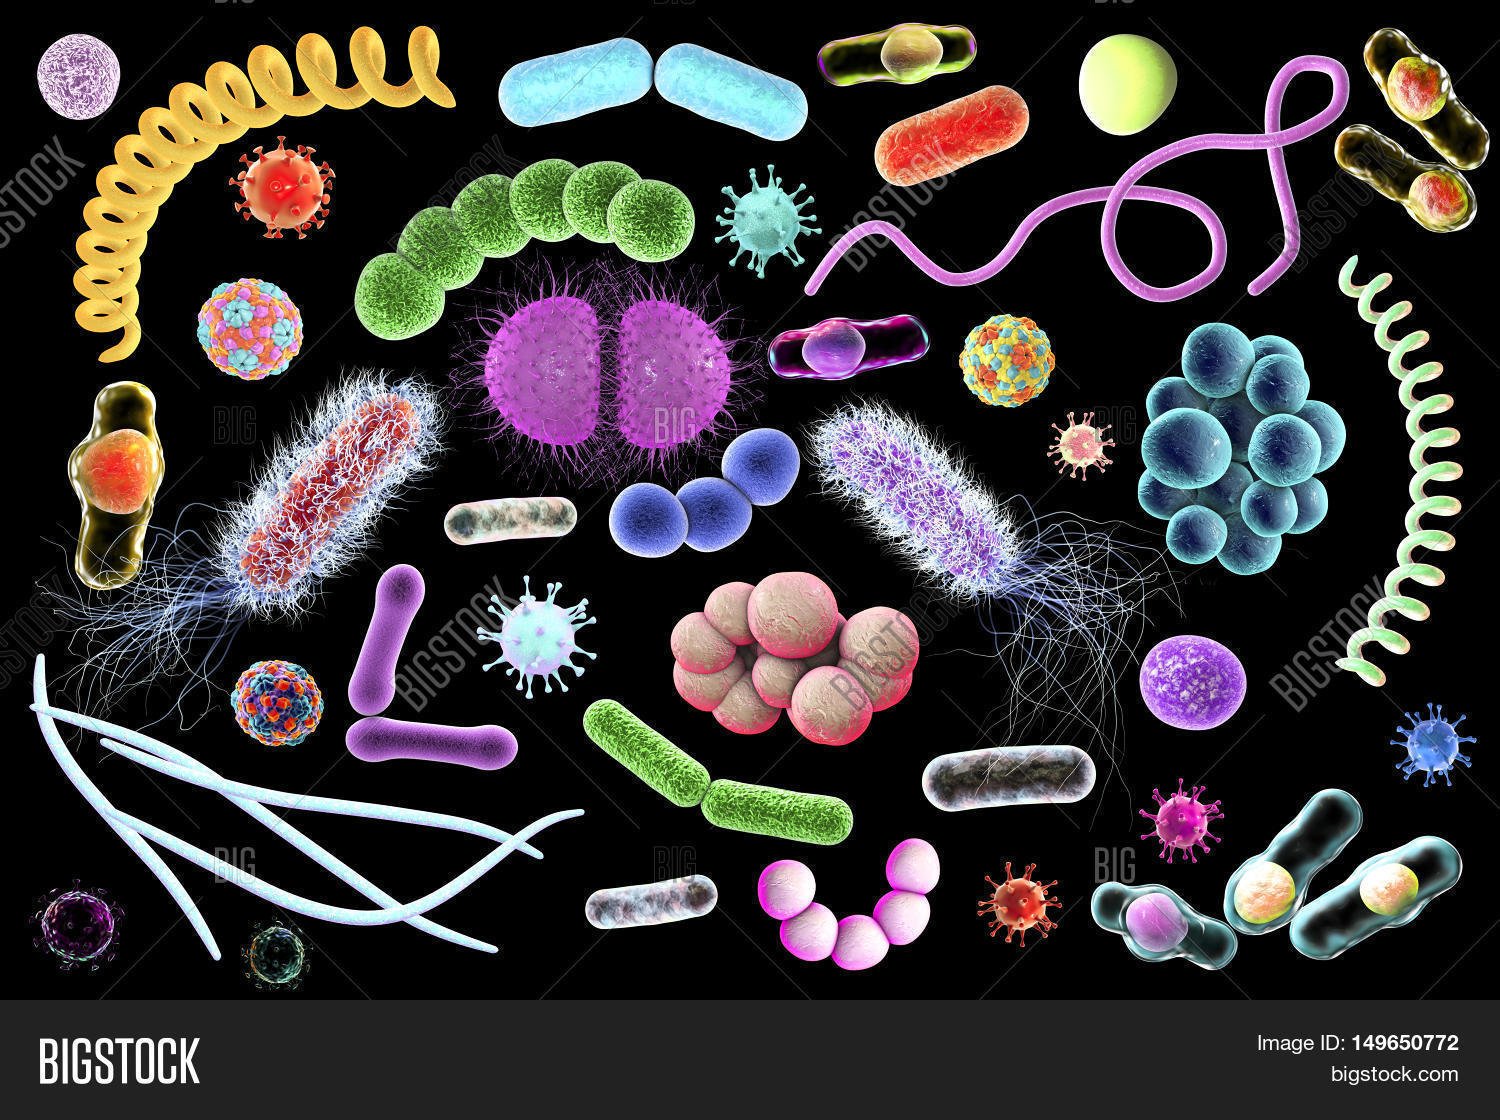 Формы вирусов и бактерий